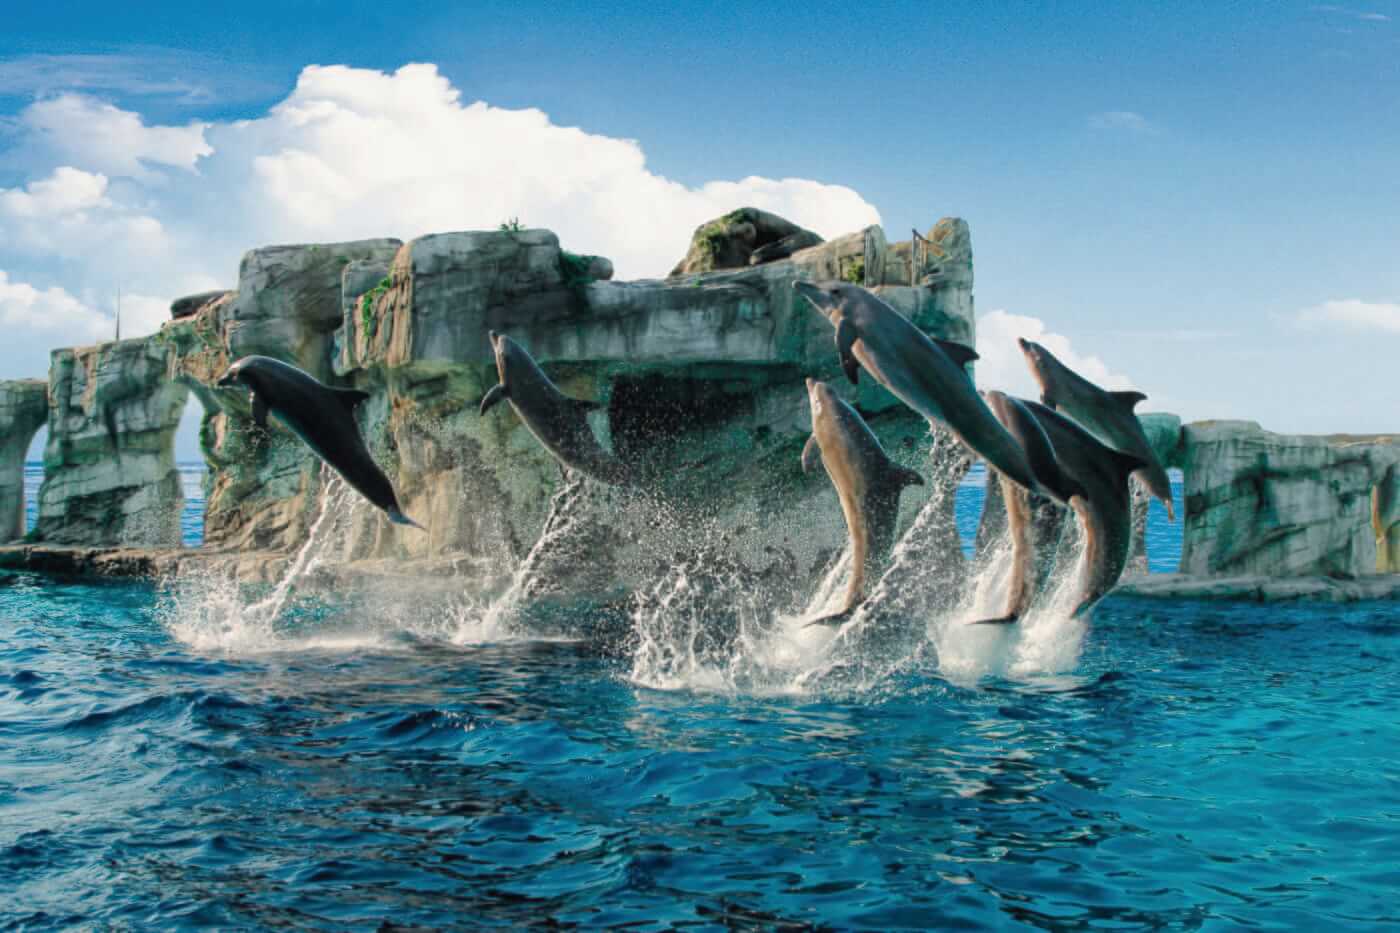 Oltremare et Aquafan, face à face avec les dauphins et de nombreux toboggans.